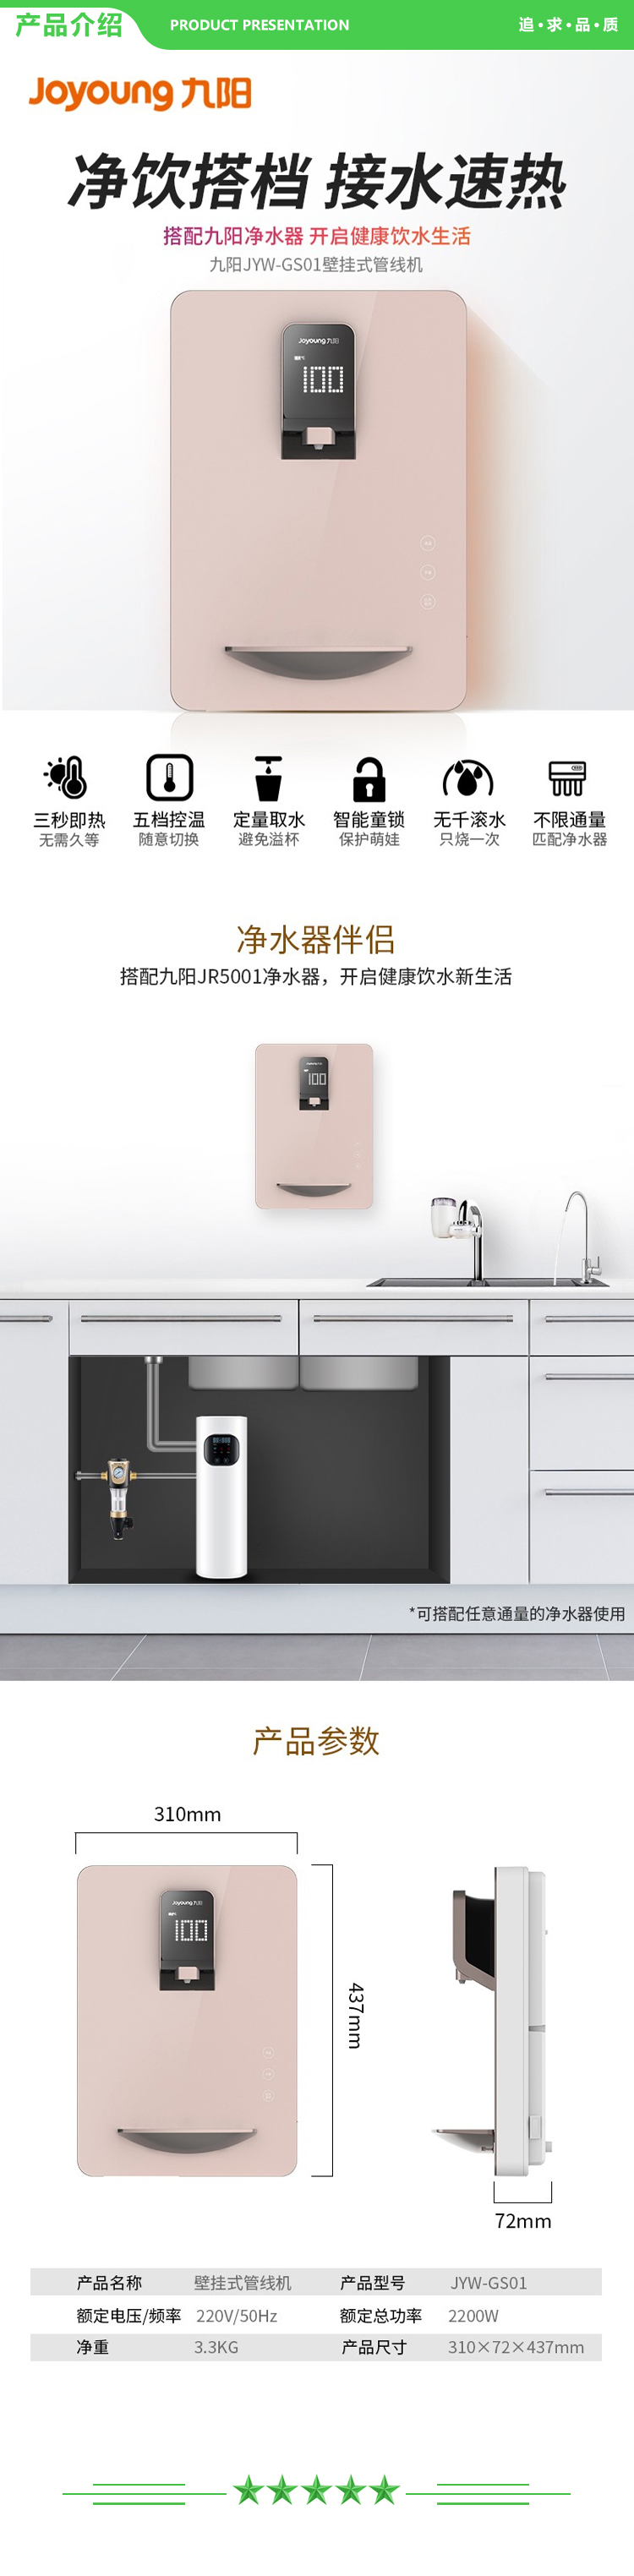 九阳 Joyoung JYW-GS01 管线机 壁挂式加热一体机 净水器超薄直饮机即热饮水机.jpg